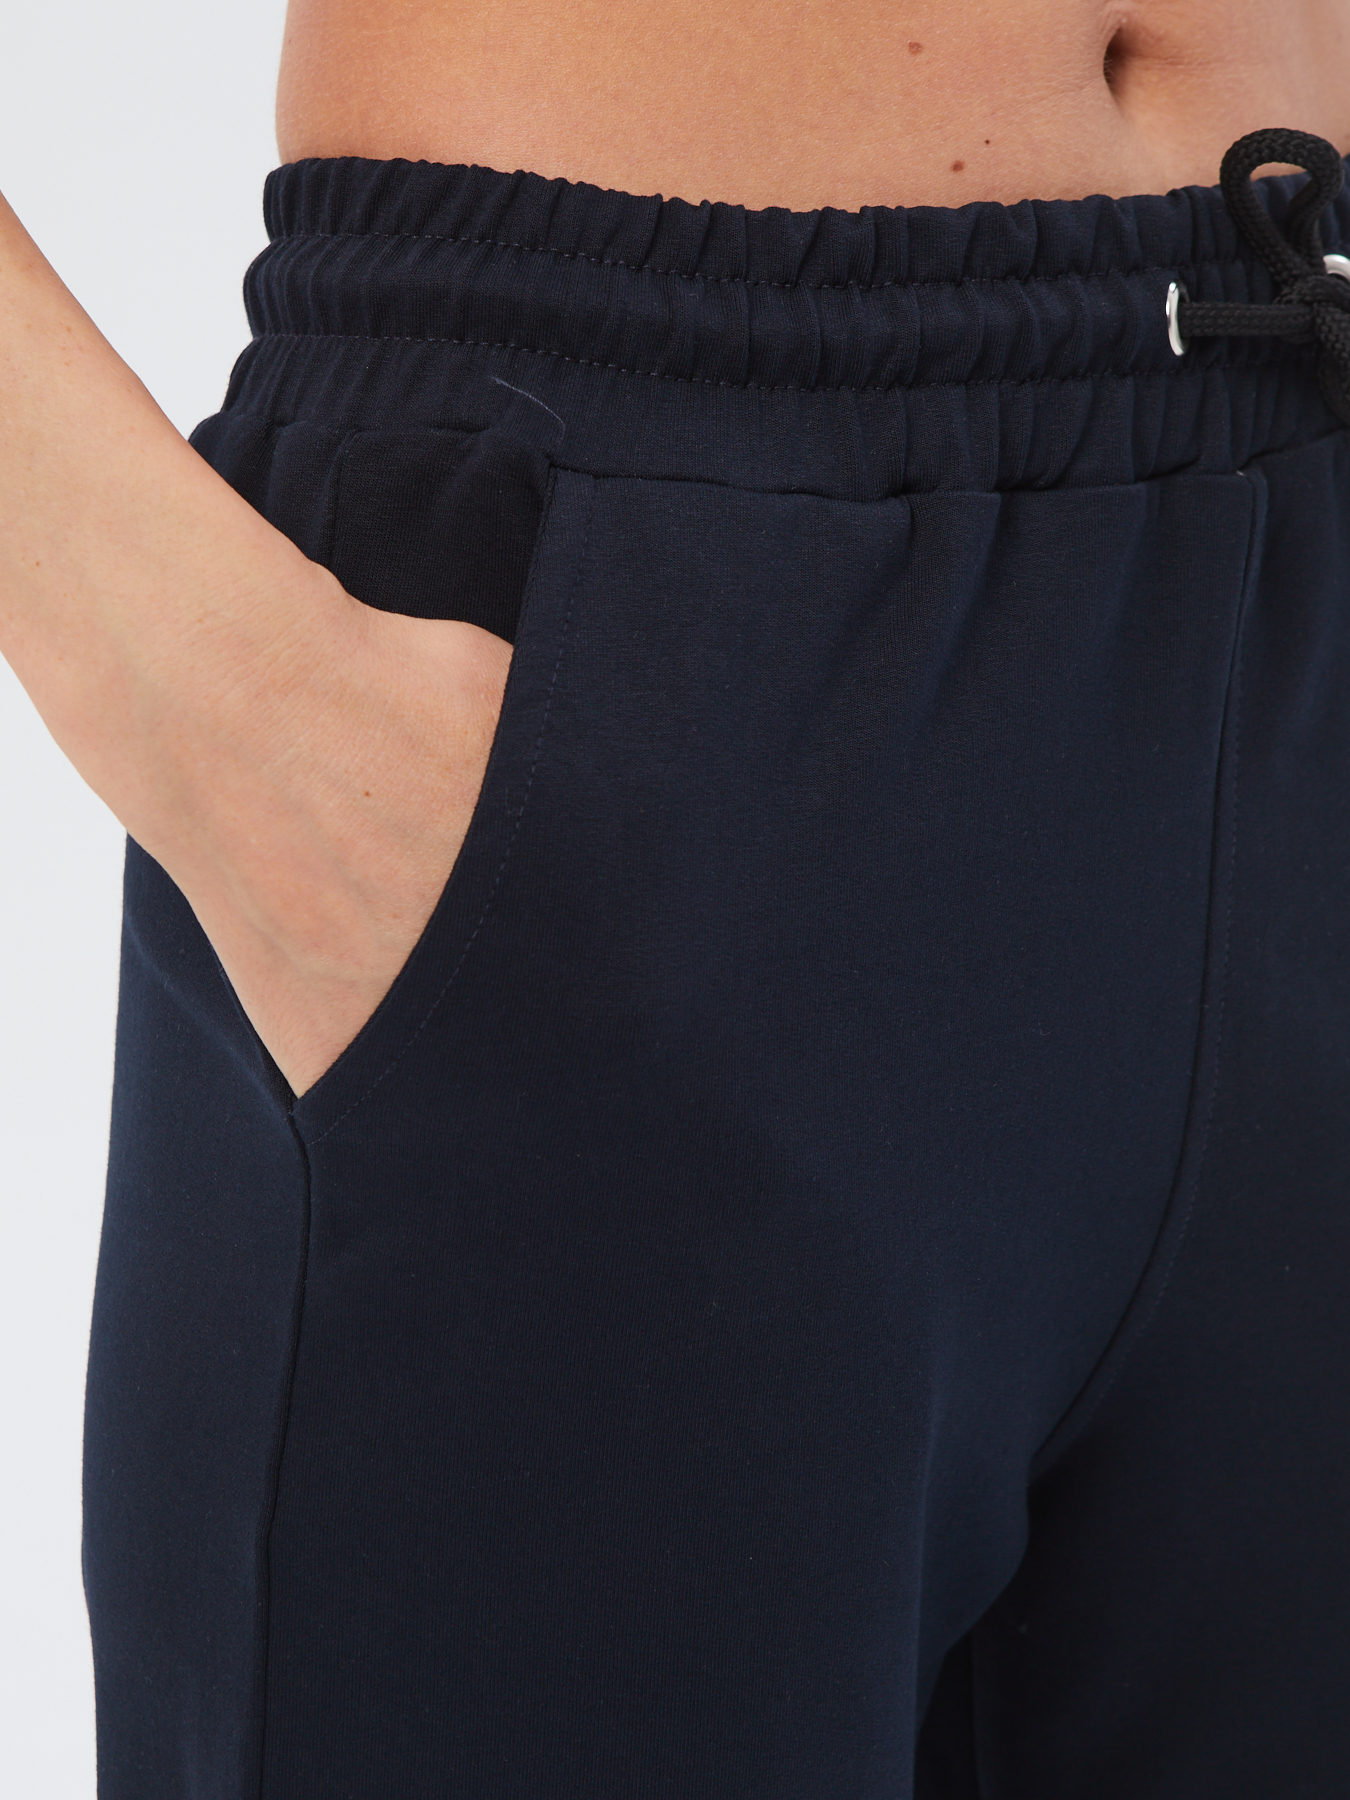 Спортивные брюки женские Still-expert б5 синие 50/165-180